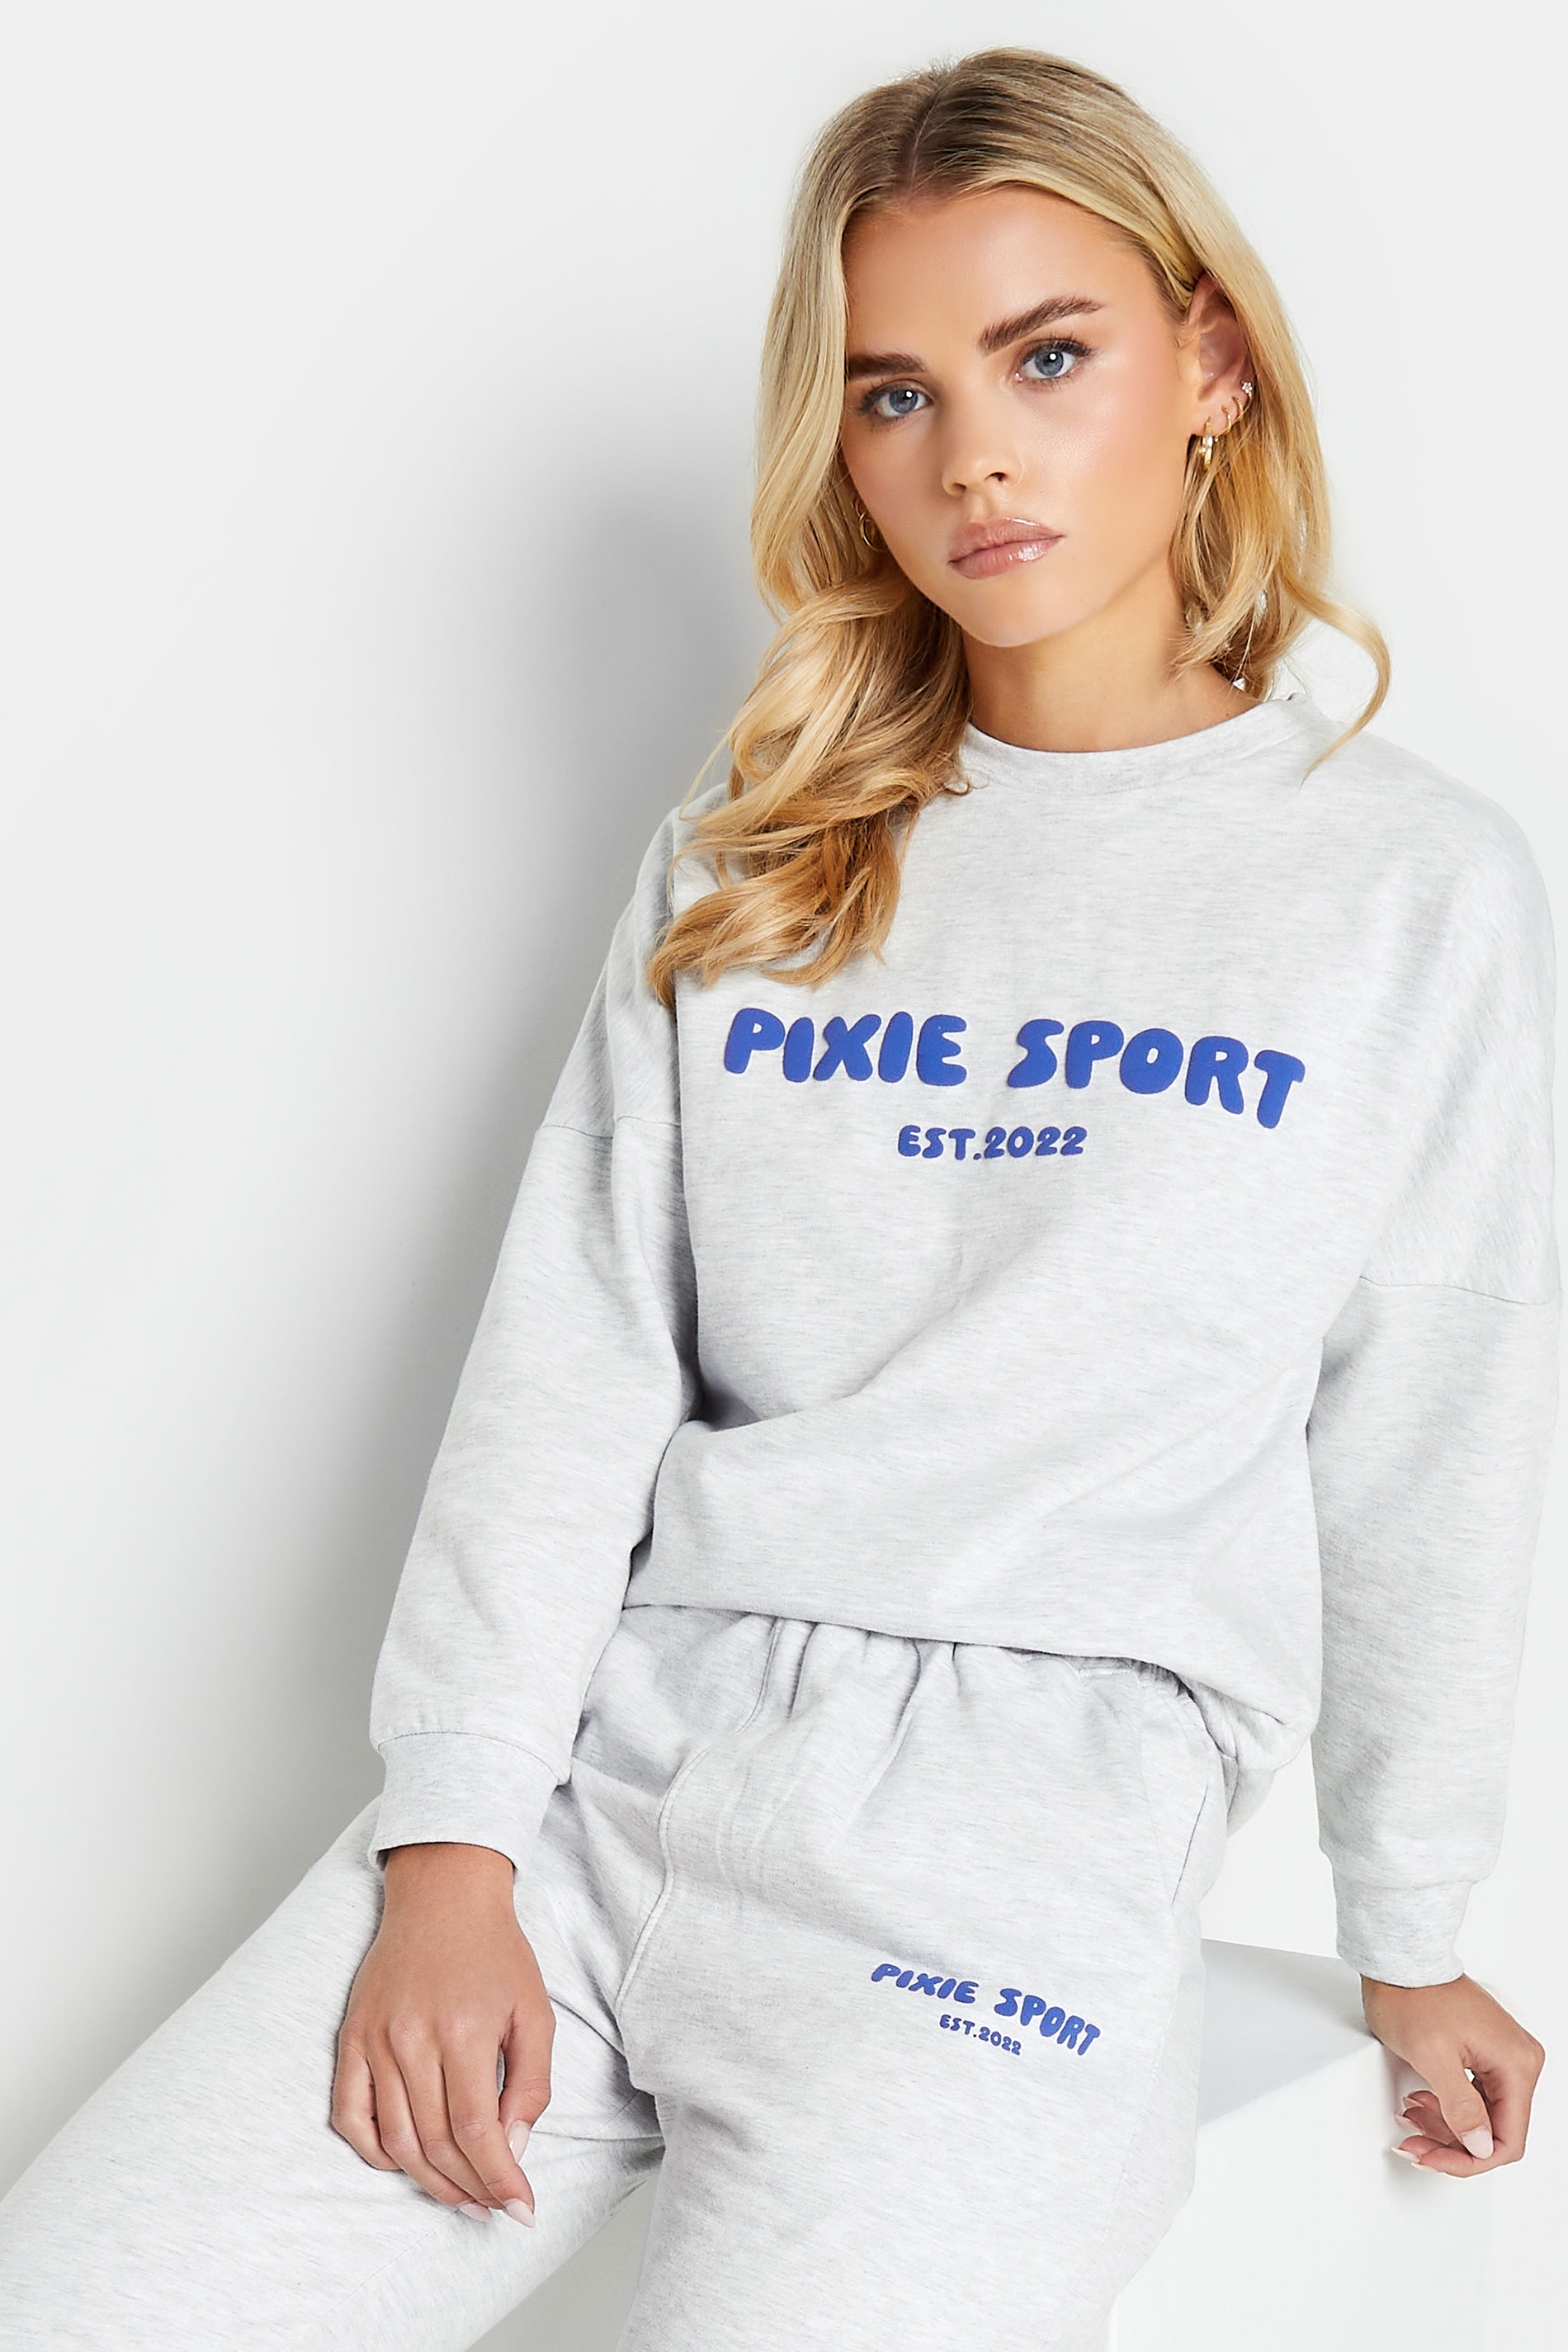 PixieGirl Petite Grey 'Pixie Sport' Slogan Sweatshirt | PixieGirl  2